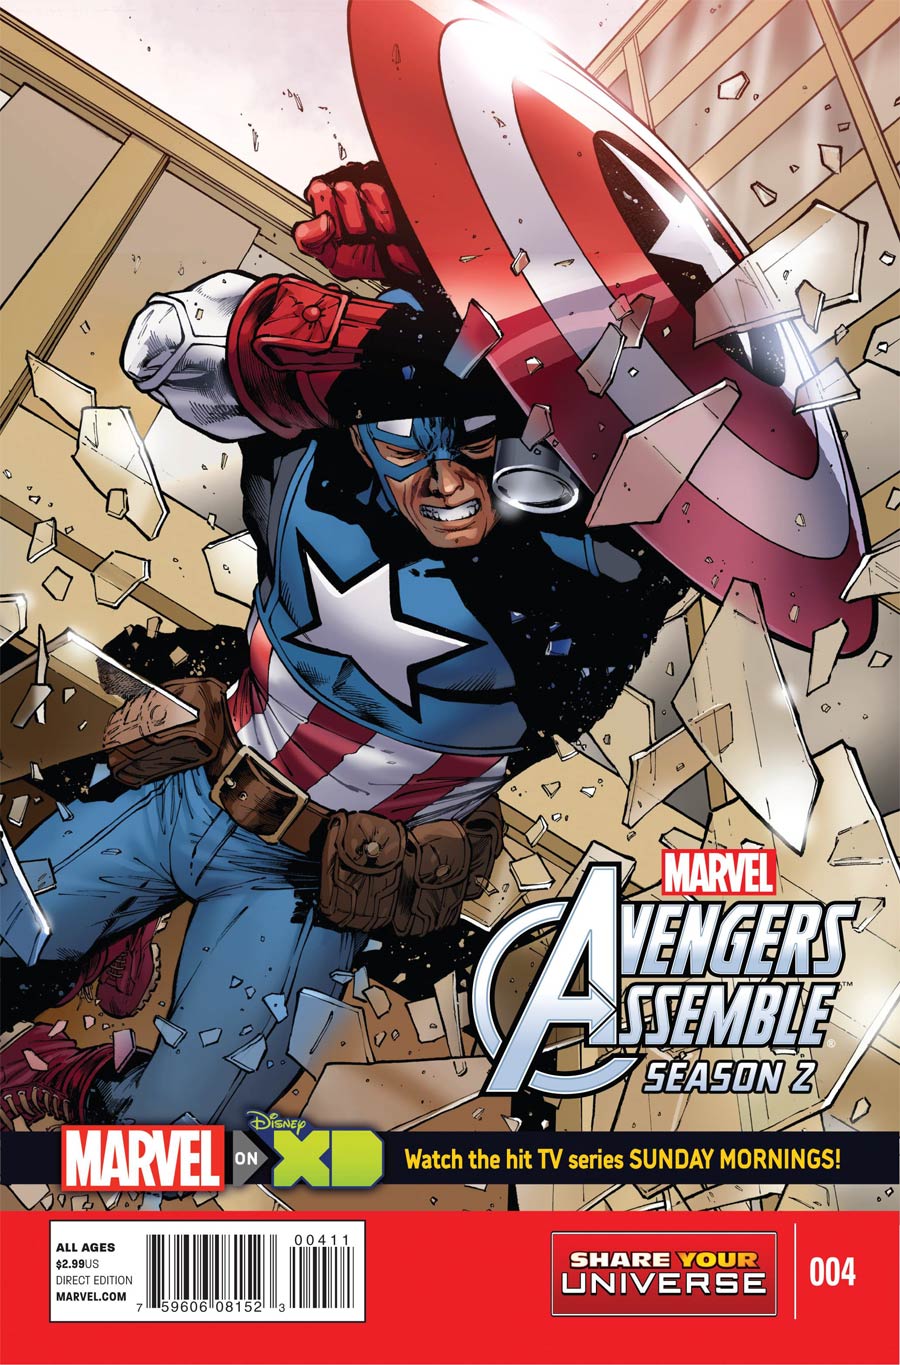 Marvel Universe Avengers Assemble Season 2 #4